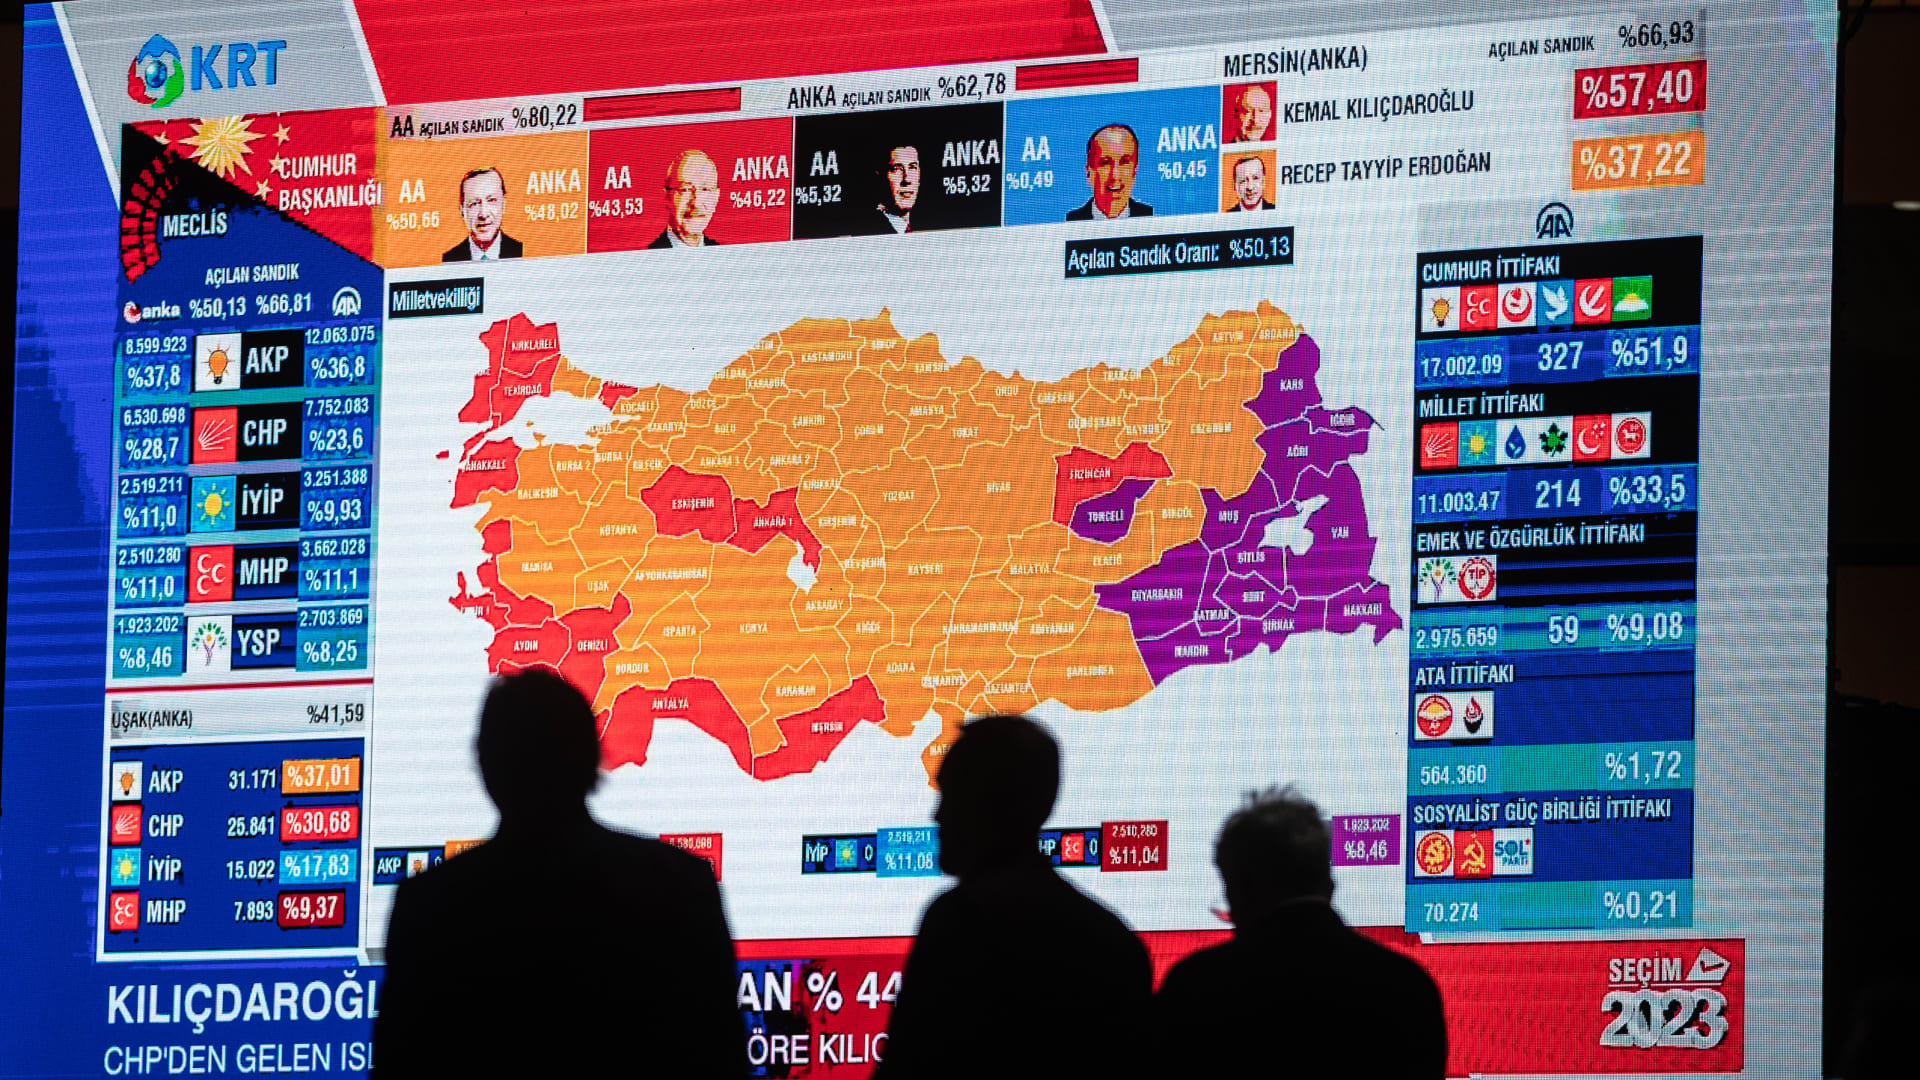 جولة الإعادة بالانتخابات التركية.. من يرجح فوزه اليوم؟